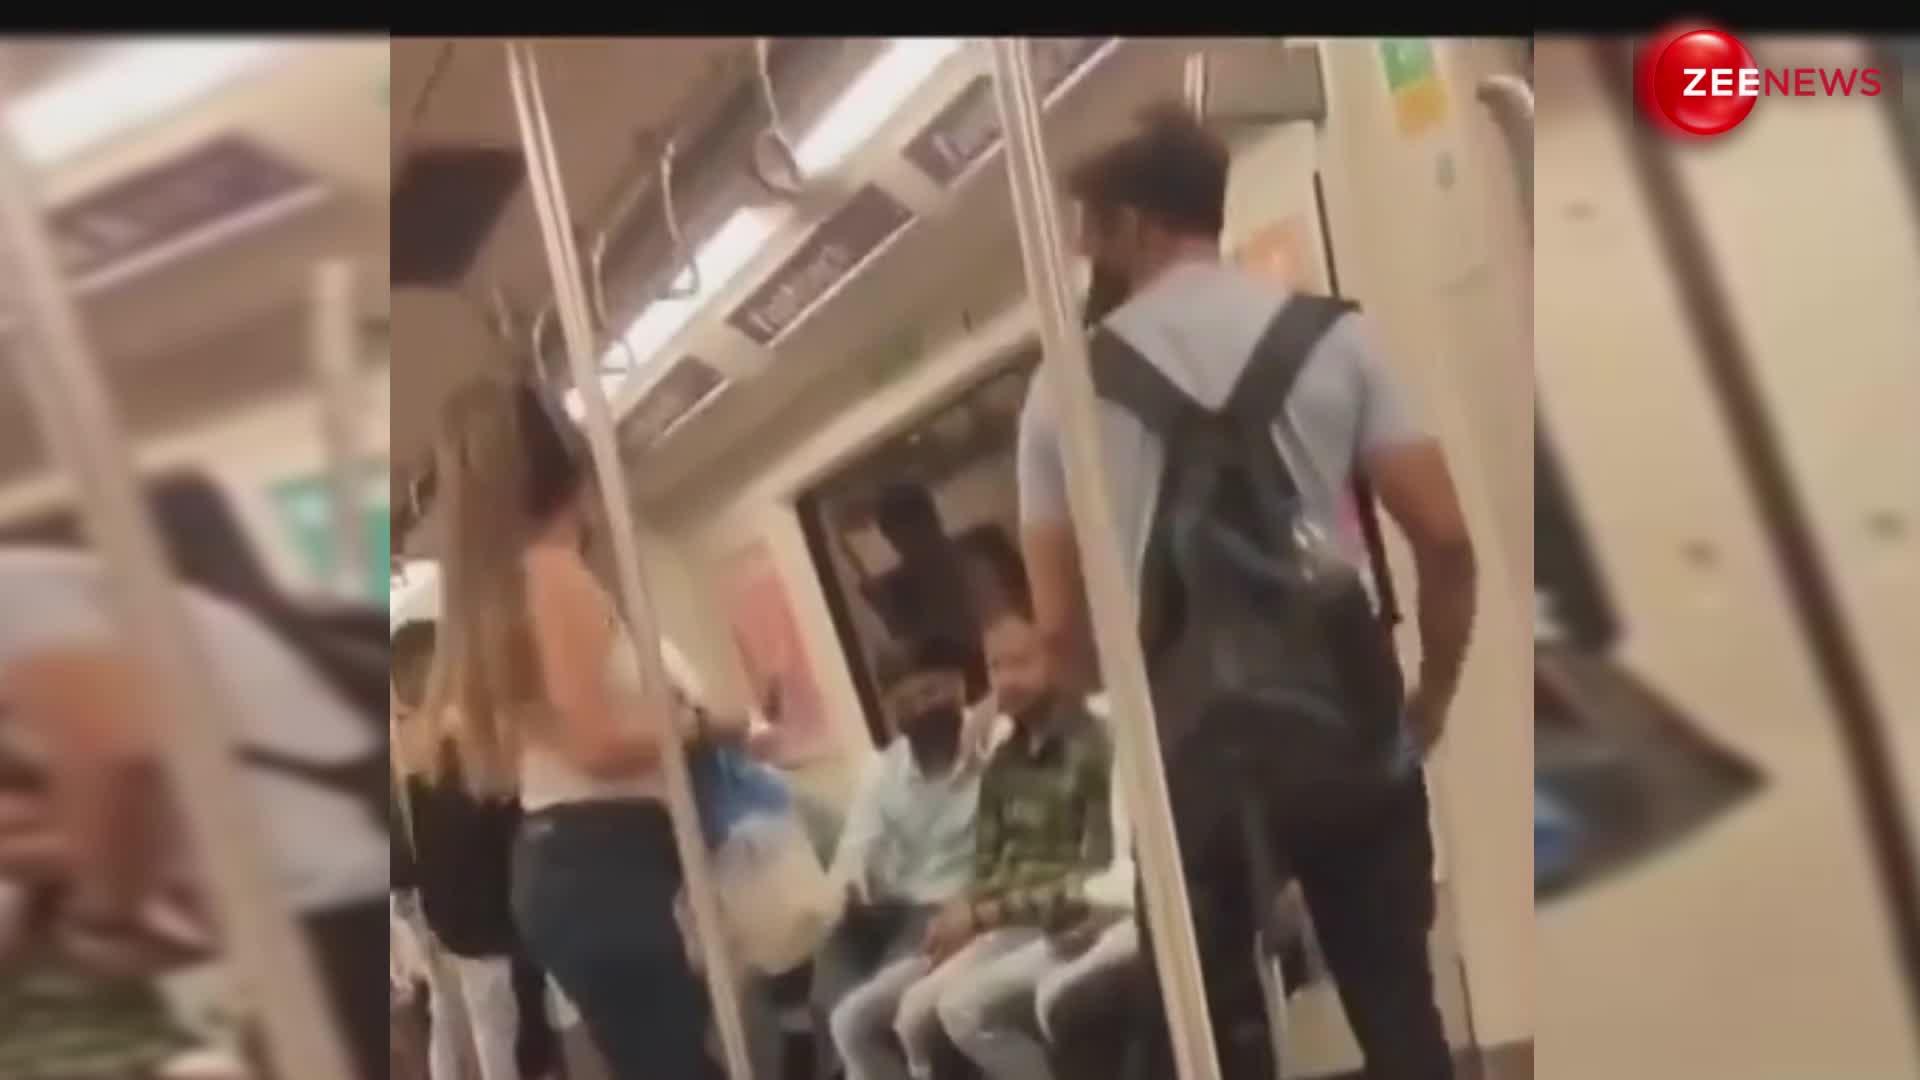 Metro Fight Video: मेट्रो बनी अखाड़ा... लड़का-लड़की ने एक दूसरे को लगाए इतने चांटे, देख हैरान रह गए लोग